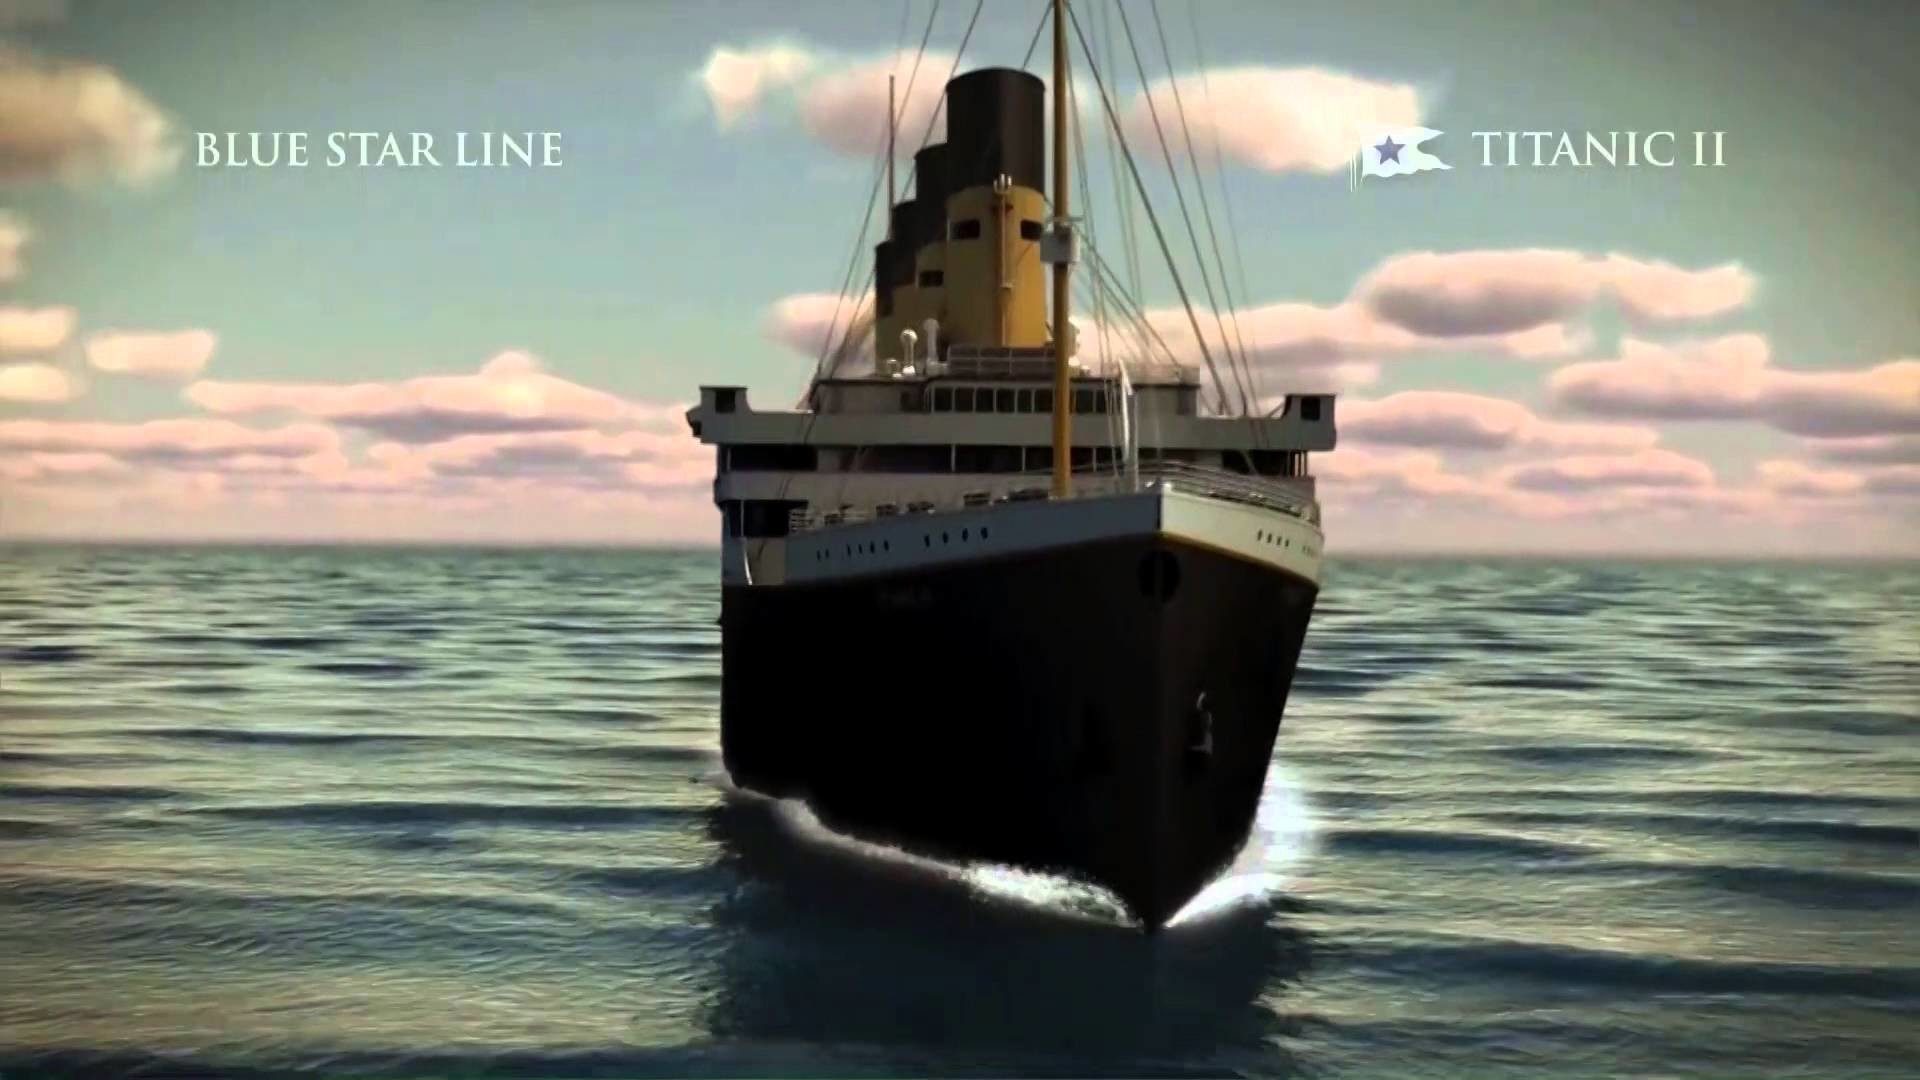 1920x1080 El Titanic 2 zarparÃ¡ en el 2018